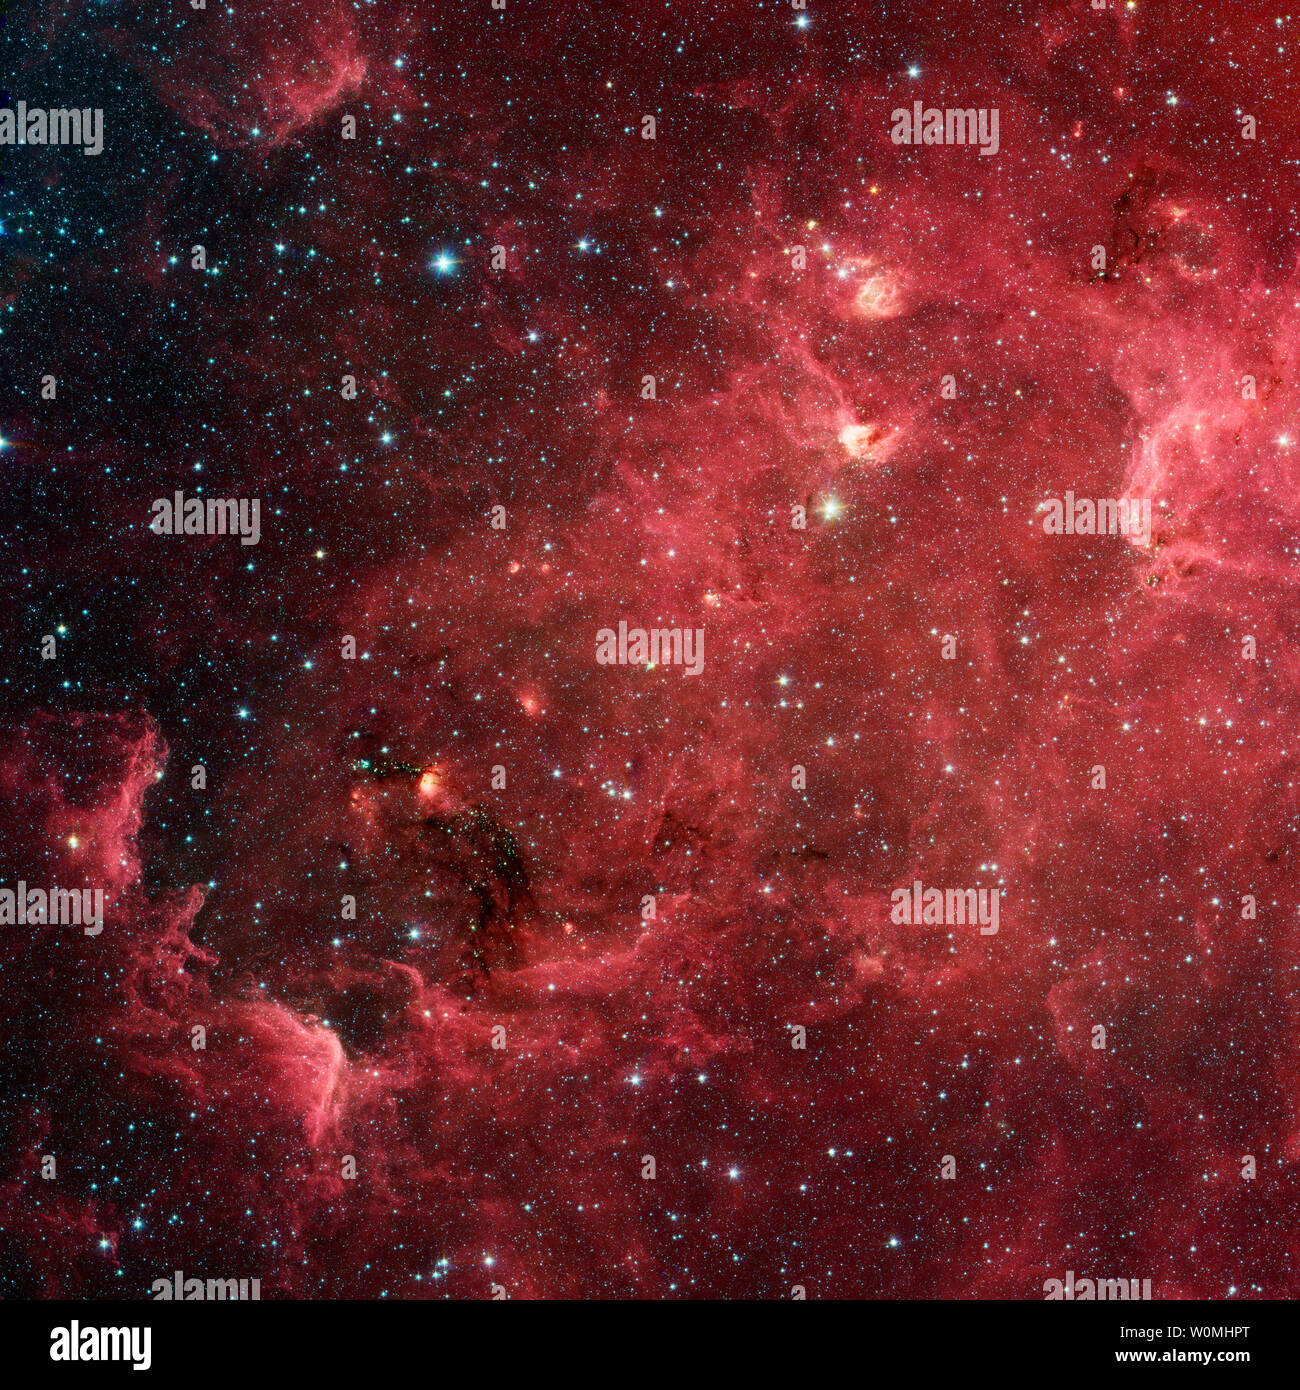 Ce paysage tourbillonnant des étoiles est connu sous le nom de Nébuleuse de l'Amérique du Nord. En lumière visible, la région ressemble à l'Amérique du Nord, mais dans cette nouvelle vue dans l'infrarouge du télescope spatial Spitzer de la NASA, le continent disparaît. UPI/NASA/JPL-Caltech Banque D'Images